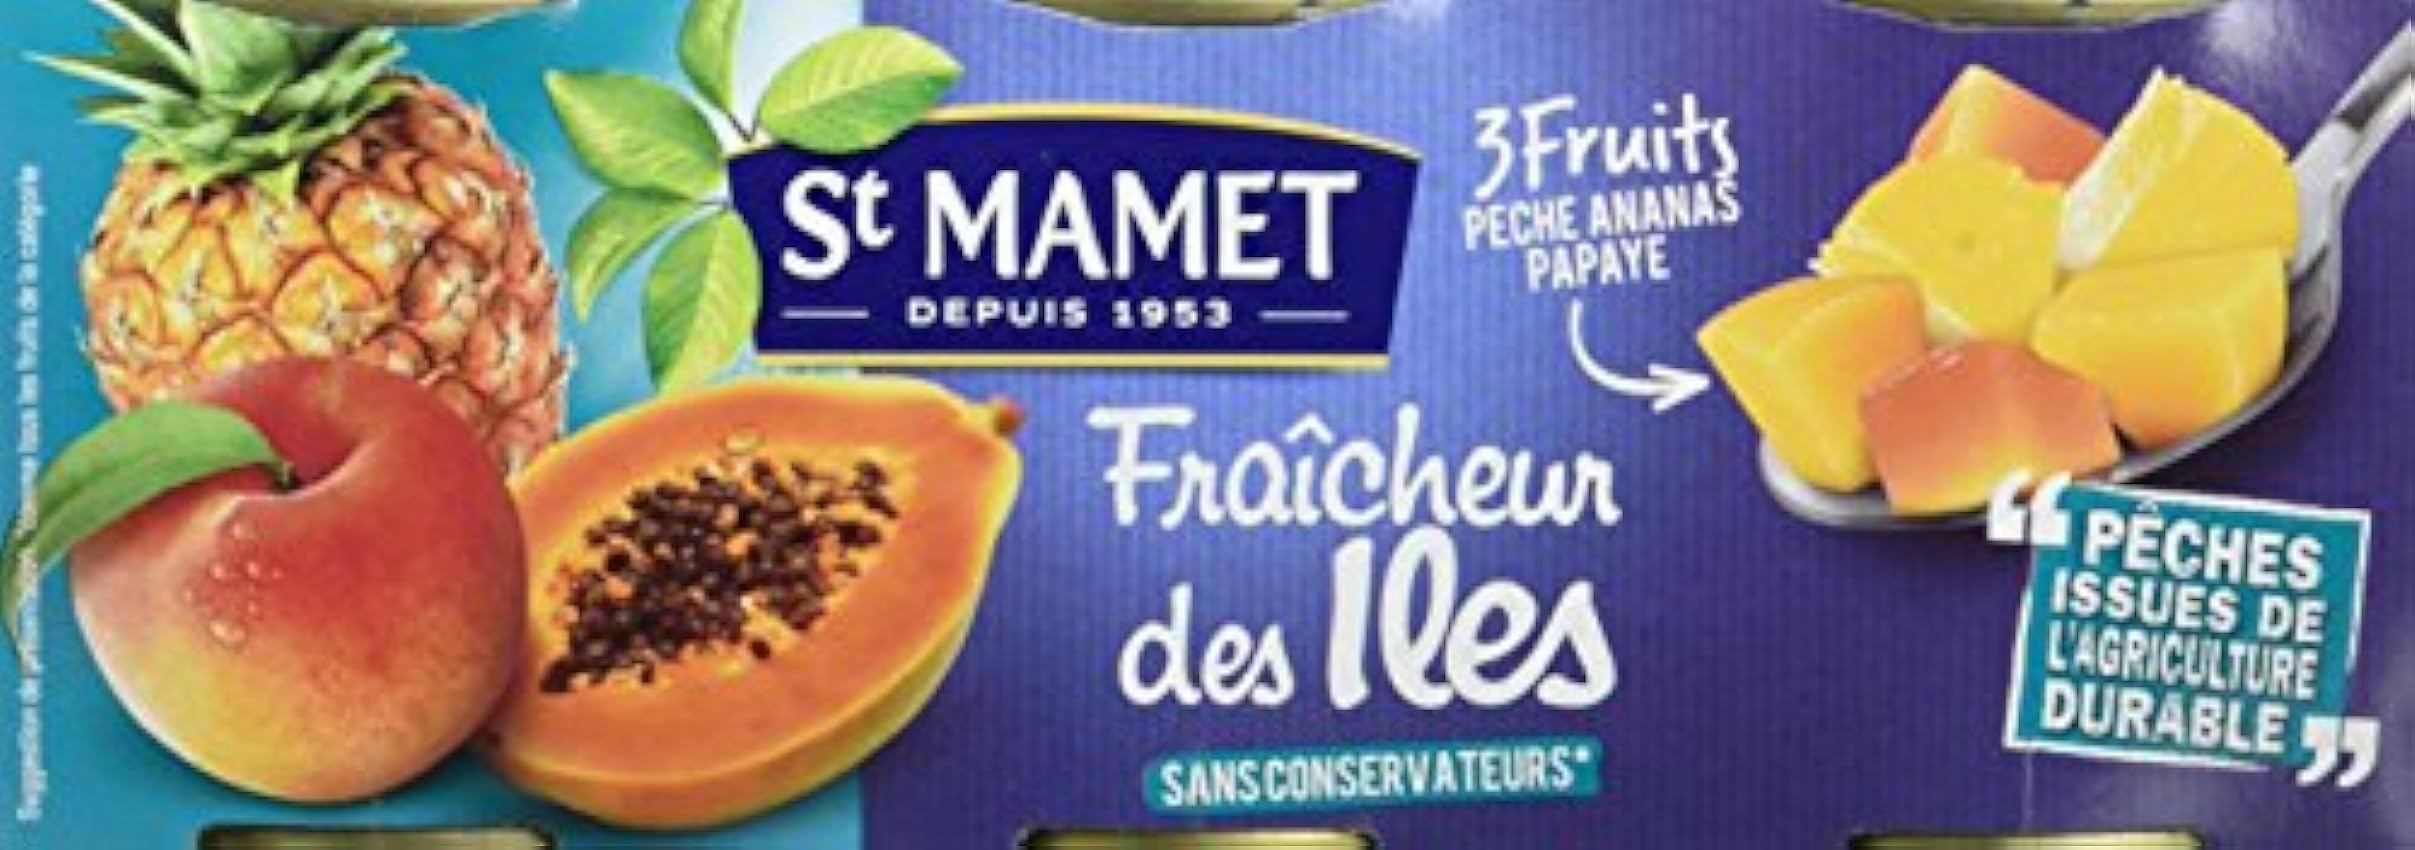 SAINT MAMET - Les Fruits en Morceaux - Les Salades de Fruits - Fraicheur des Iles - Lot de 4 LIGWTEJu